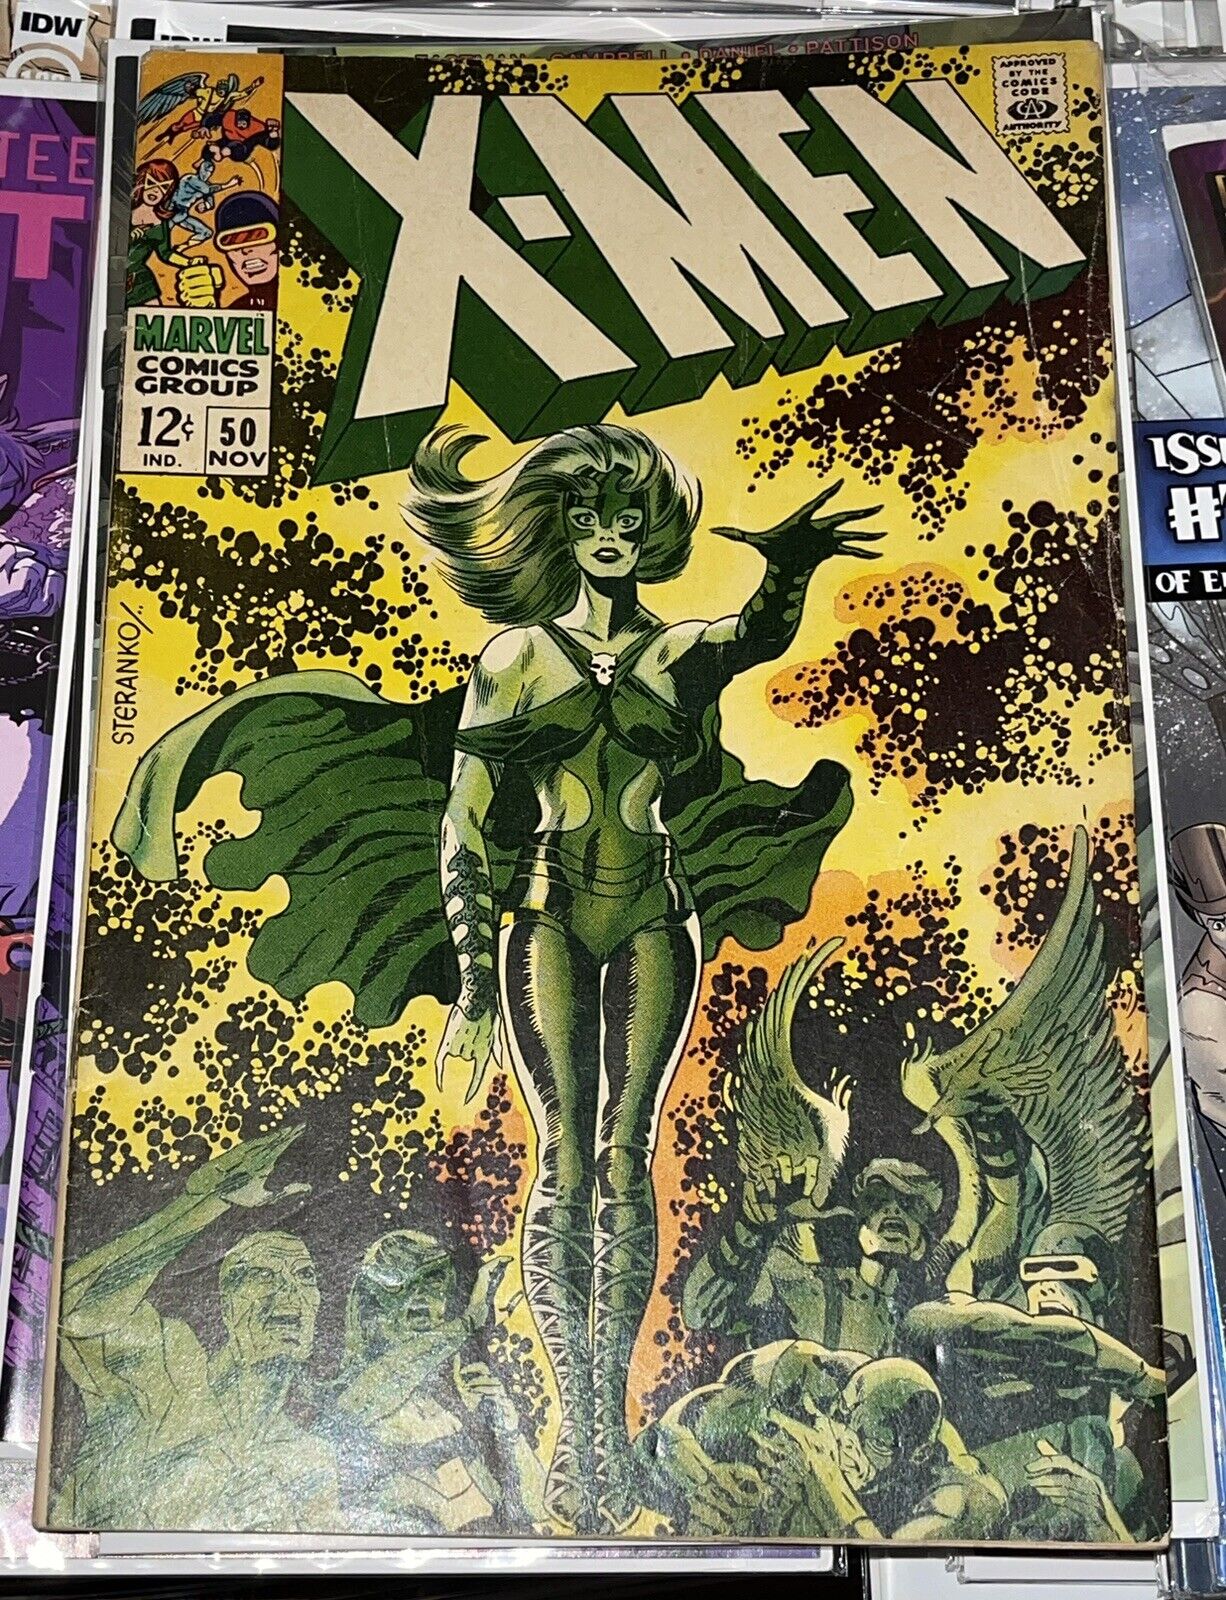 X-MEN # 50 MARVEL COMICS November 1968 JIM STERANKO COVER & ART LORNA DANE APP